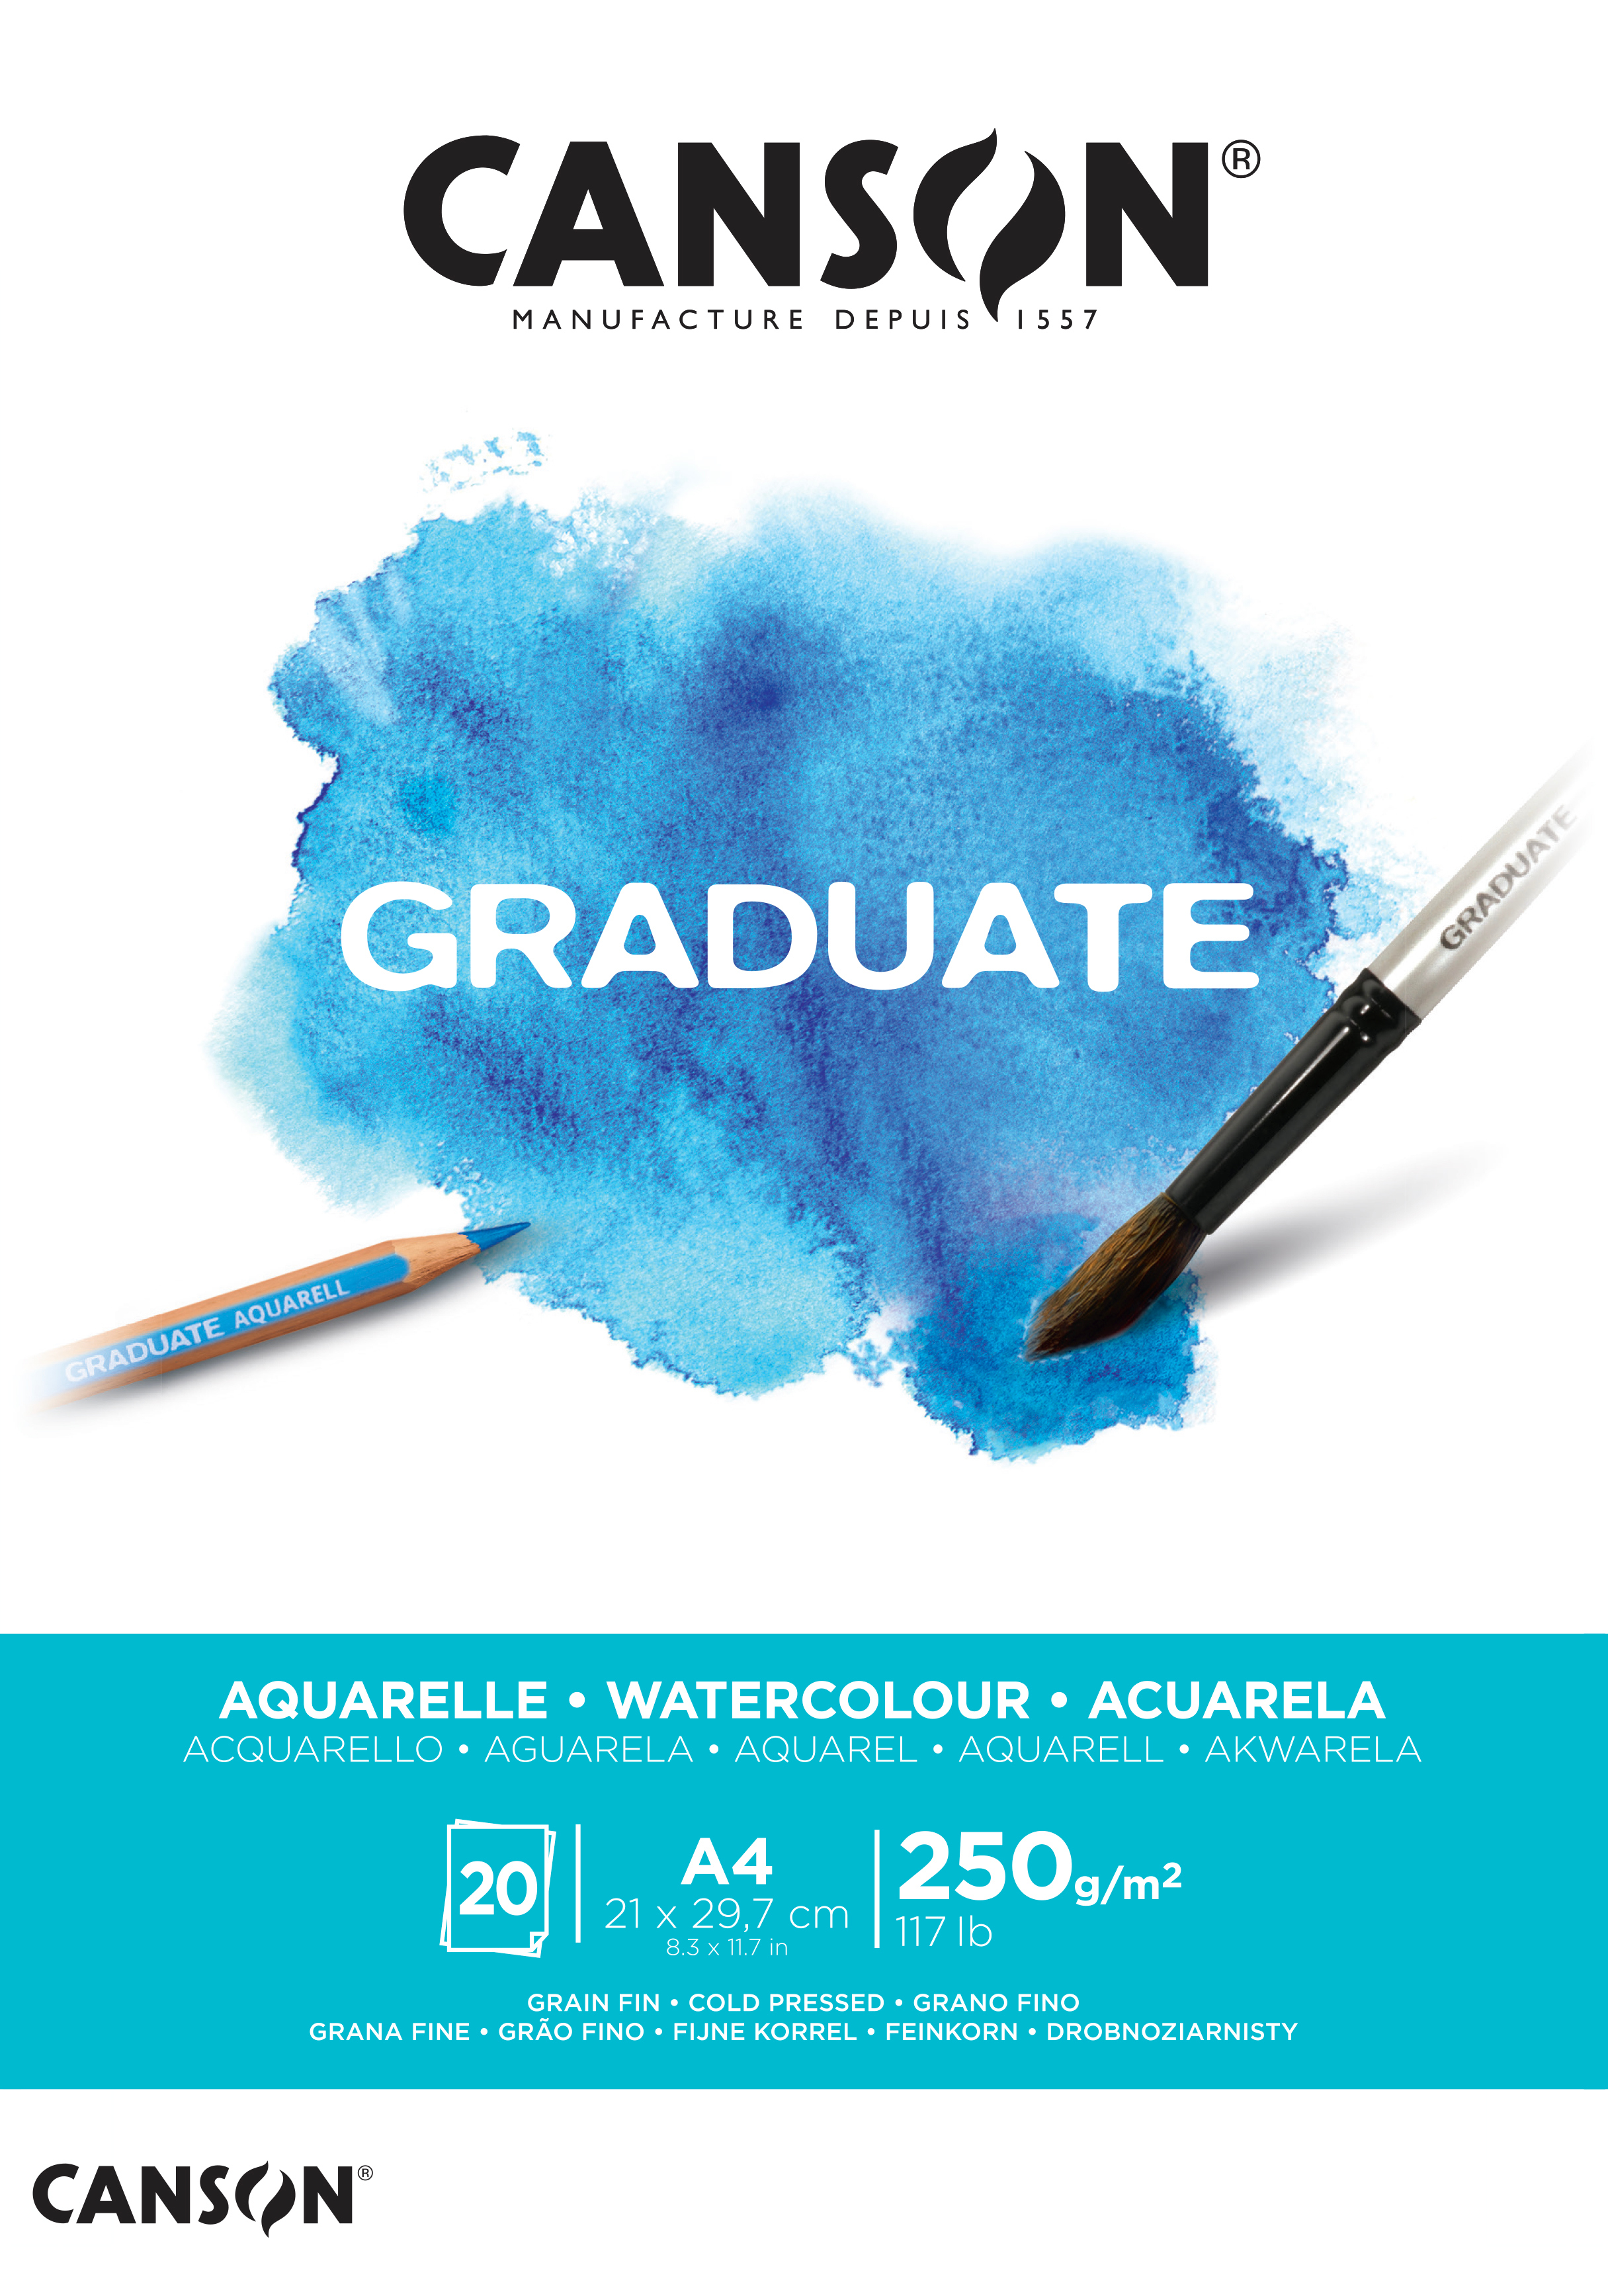 CANSON Graduate Aquarelle A4 400110374 20 flles, blanc, 250g